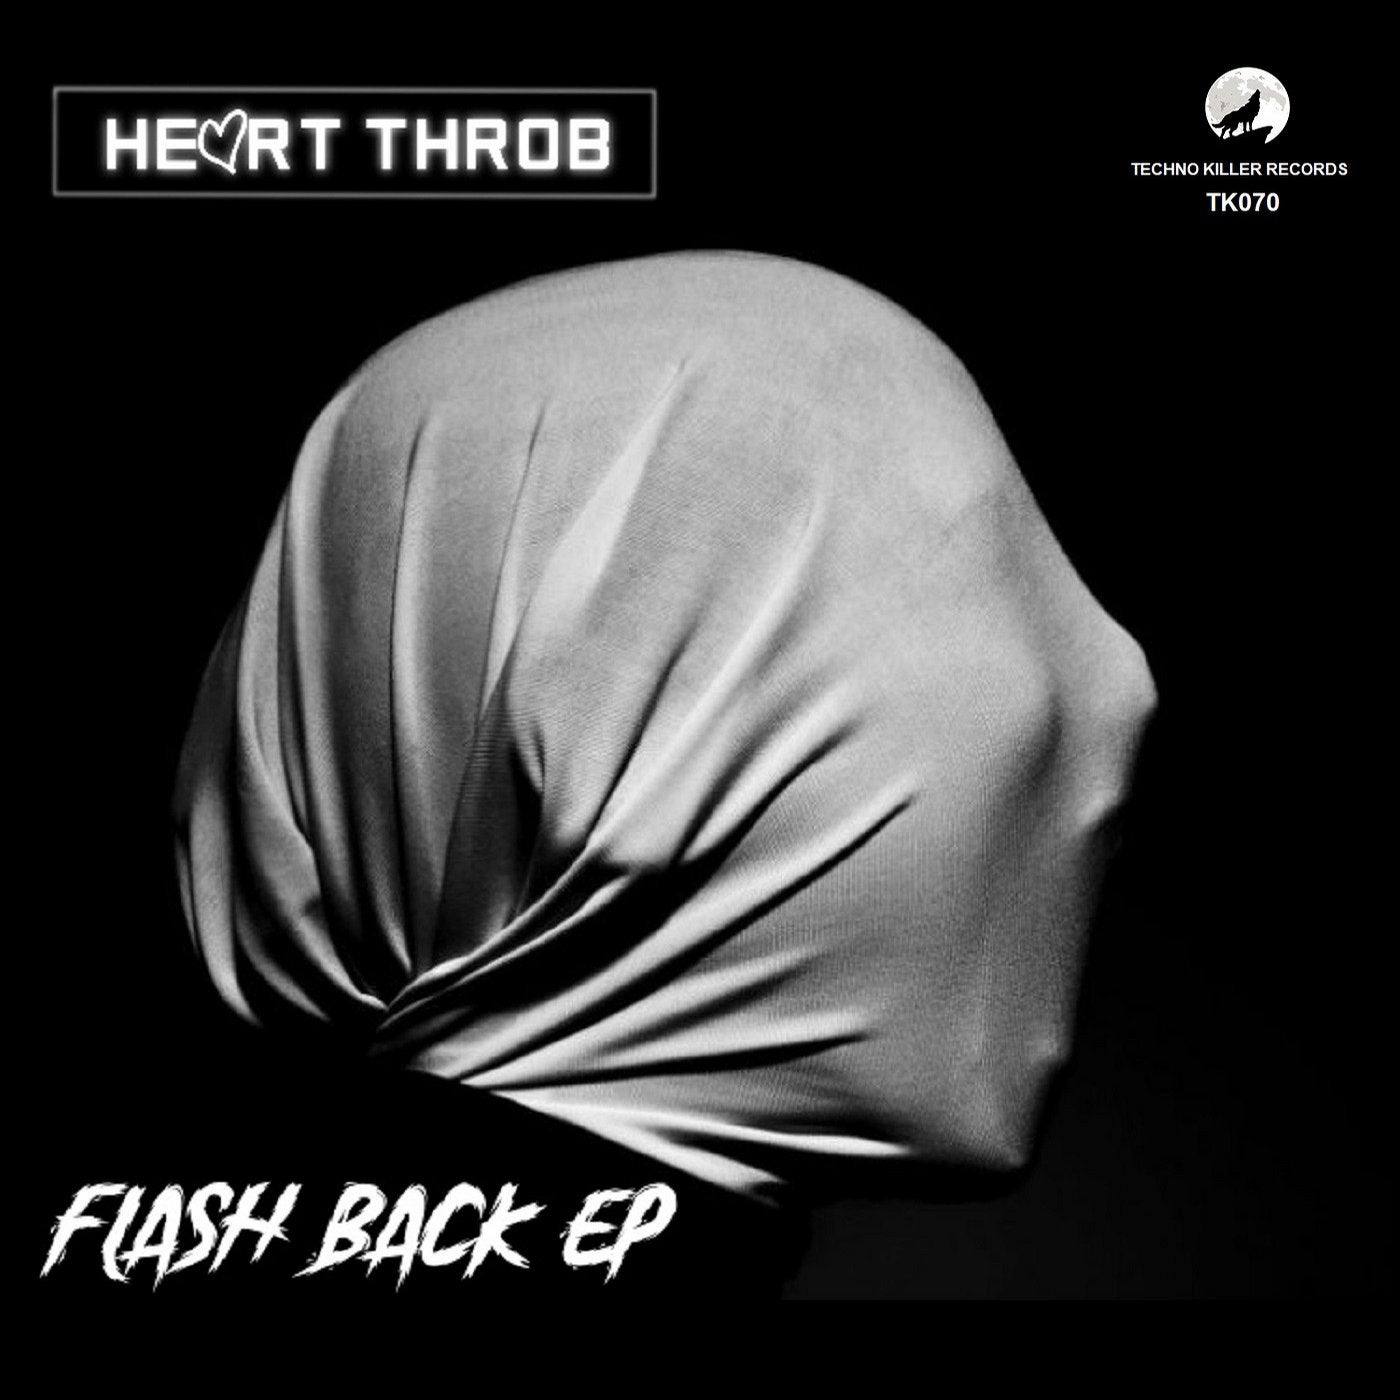 Flash Back EP